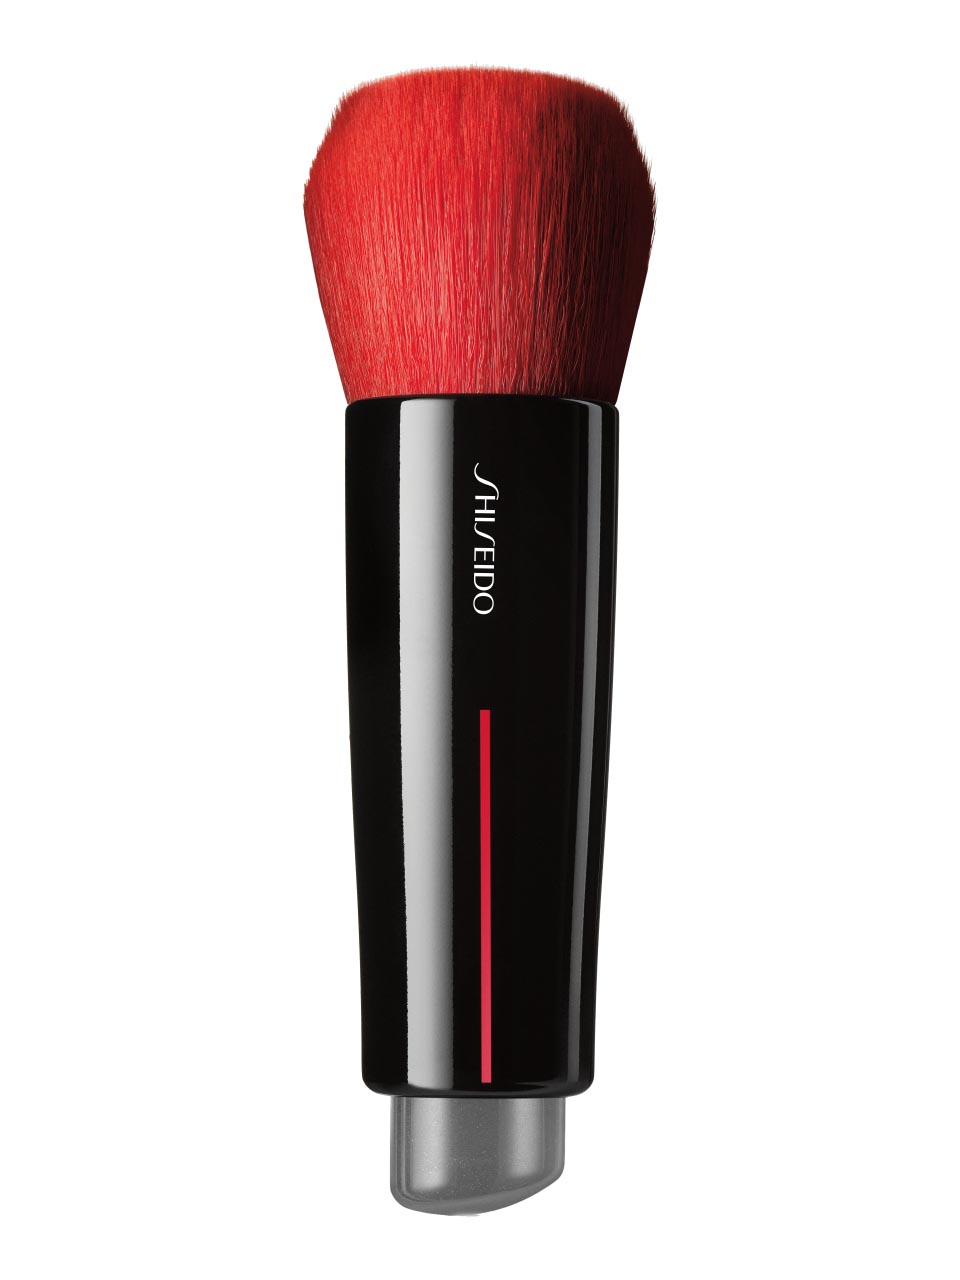 Shiseido Make-Up Daiya Fude Face Duo Brush 57 g null - onesize - 1